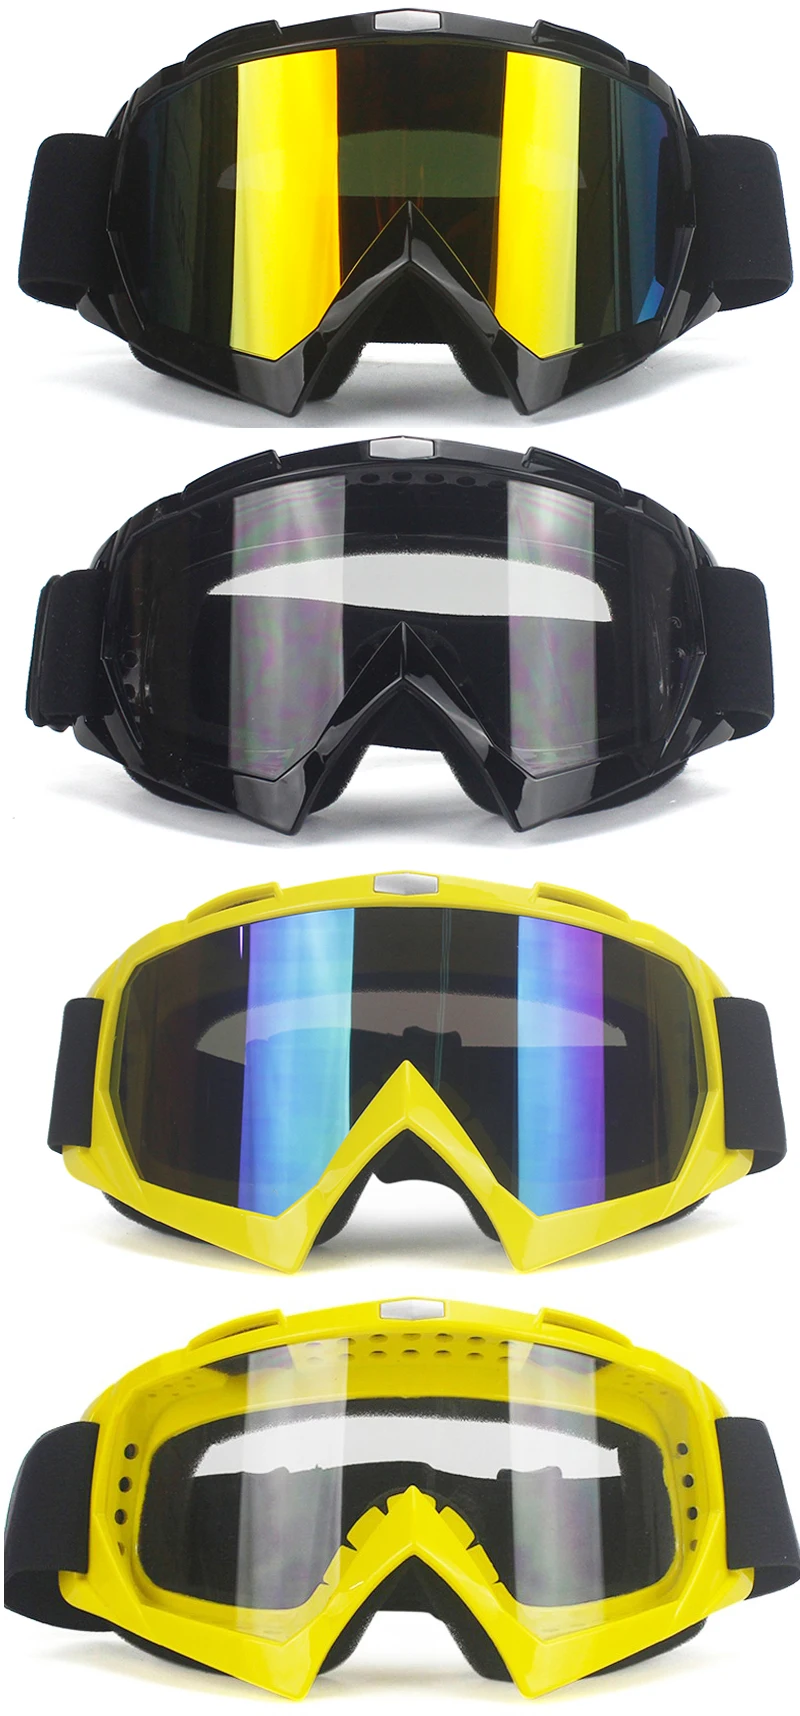 Последняя Горячая Высокое качество мотокросса очки MX внедорожные Masque шлемы с очками лыжные спортивные очки для мотоцикла грязи